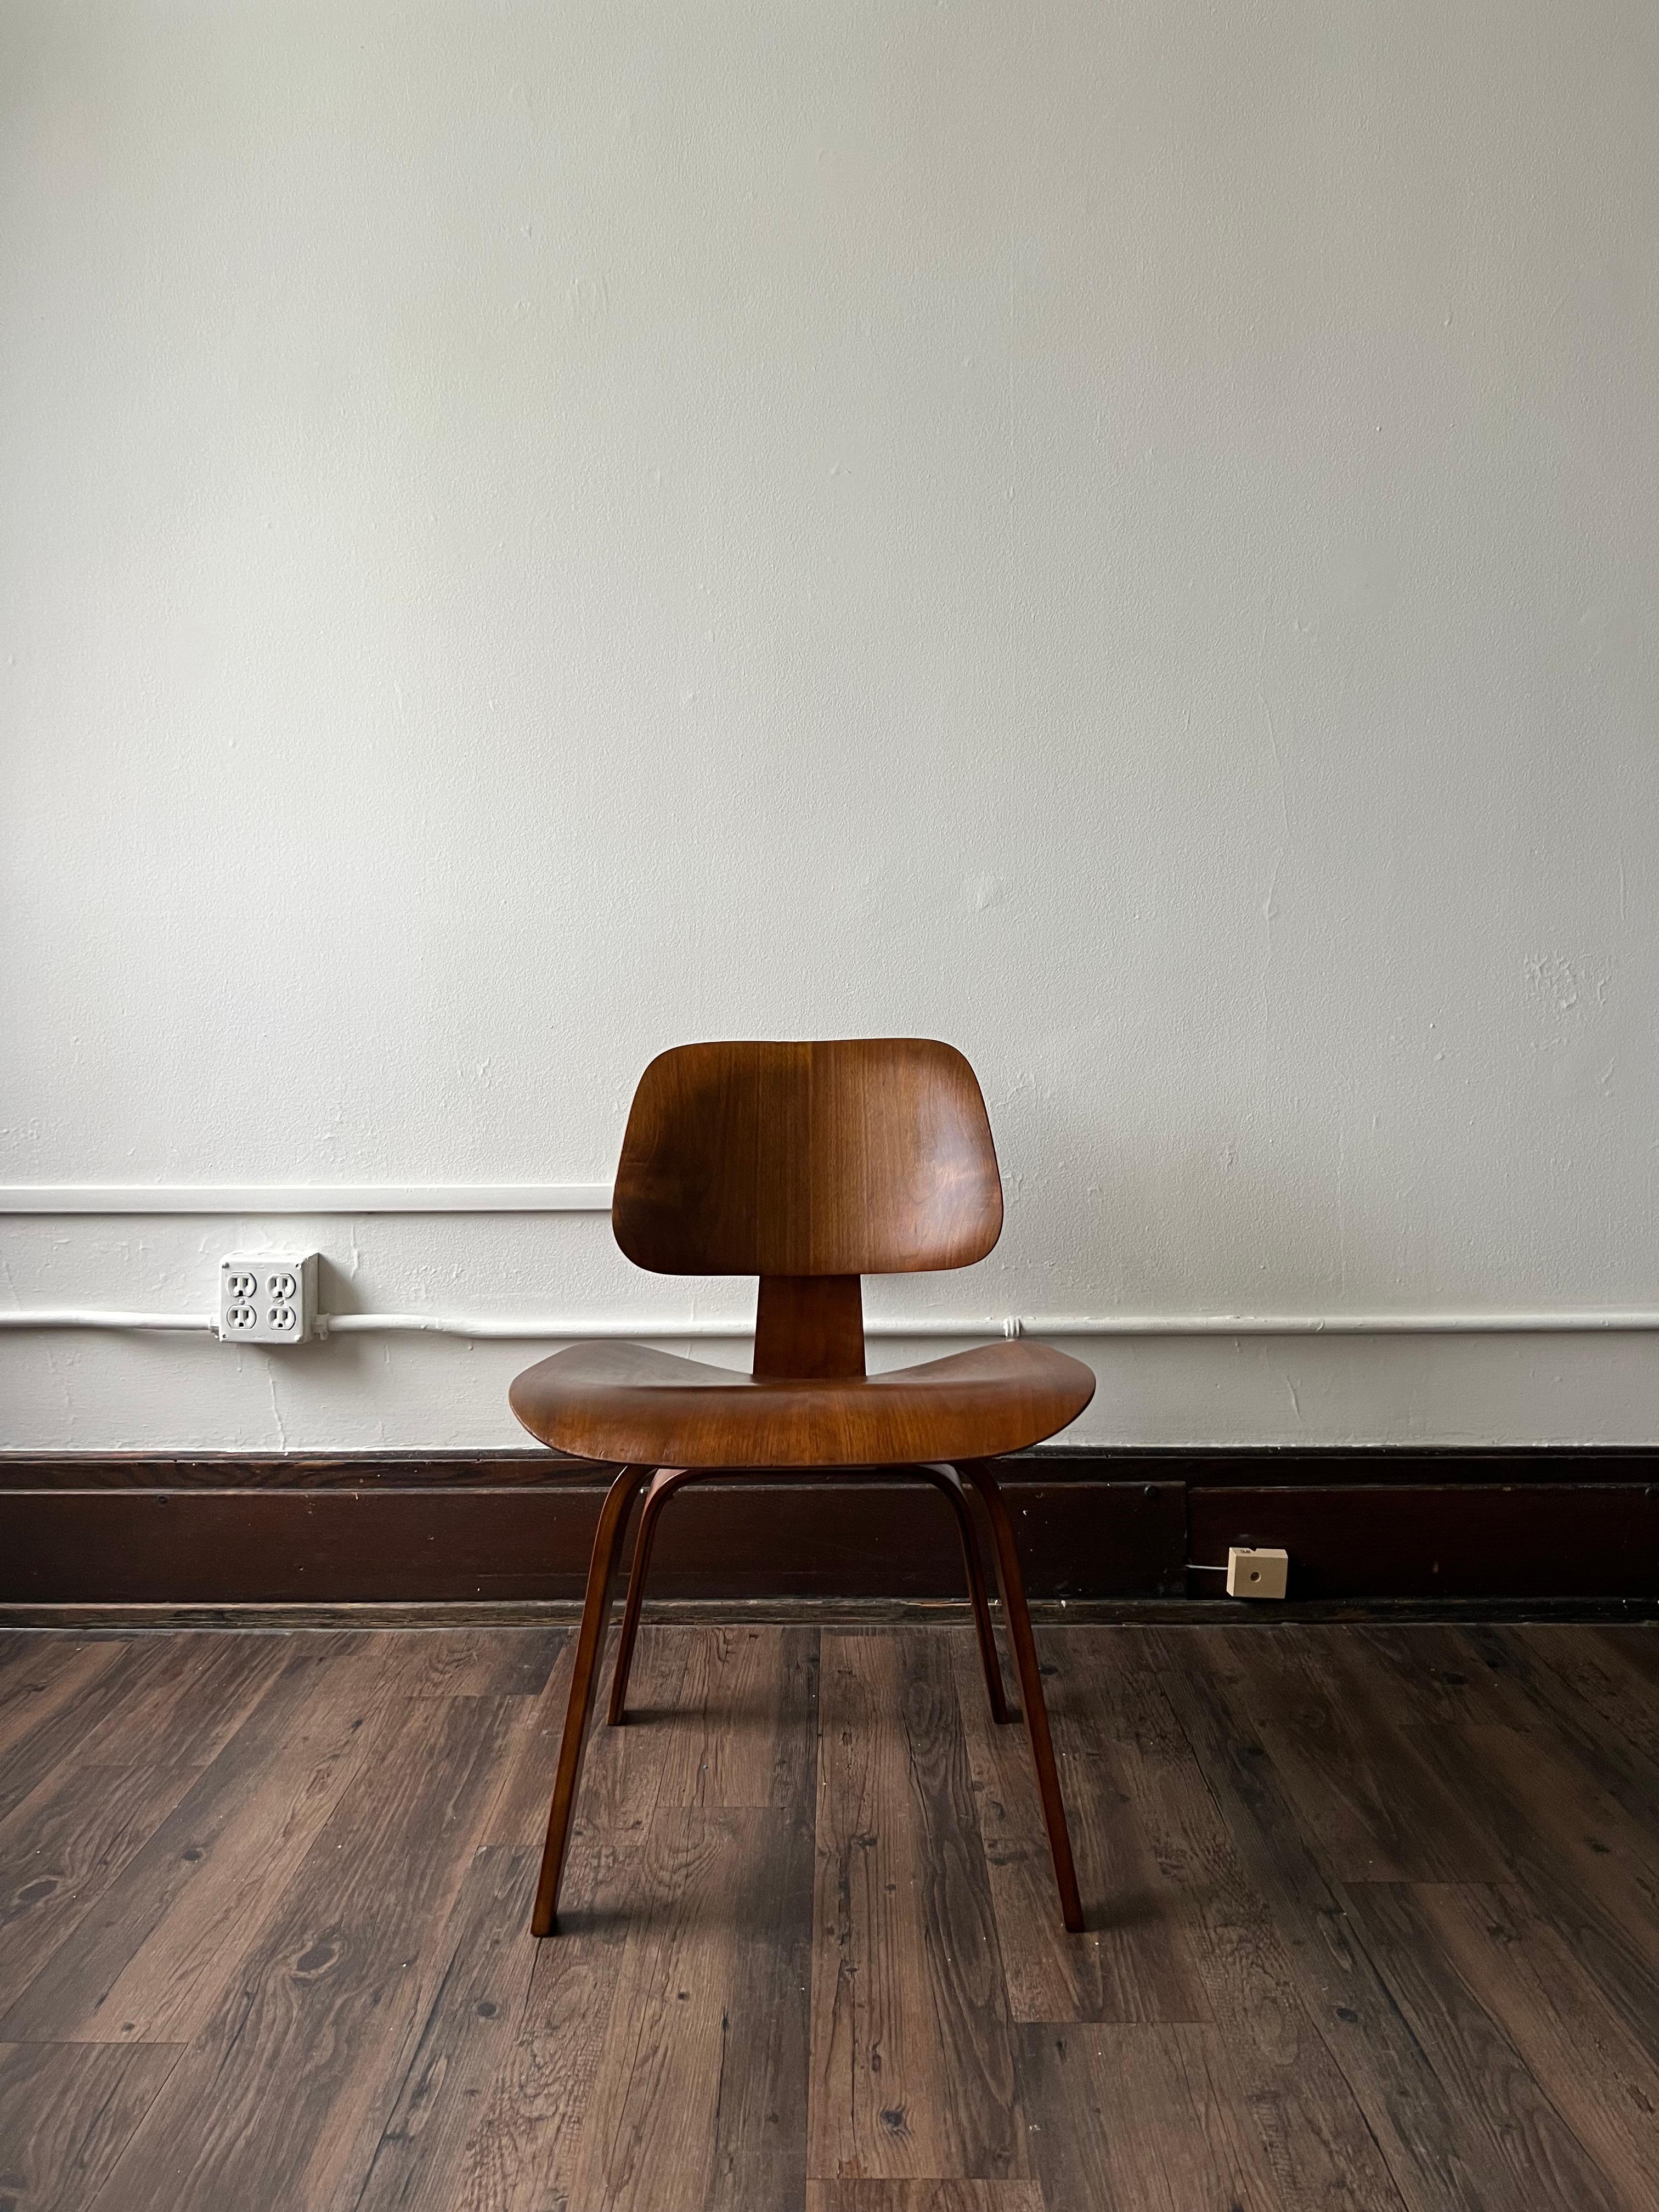 Der erste Stuhl von Charles und Ray Eames, der DCW, veränderte den Modernismus der Jahrhundertmitte für immer. Dieses Exemplar aus Asche ist unmarkiert, hat aber das 5-2-5-Schraubenmuster, das dokumentiert und bekanntlich von Evans Products